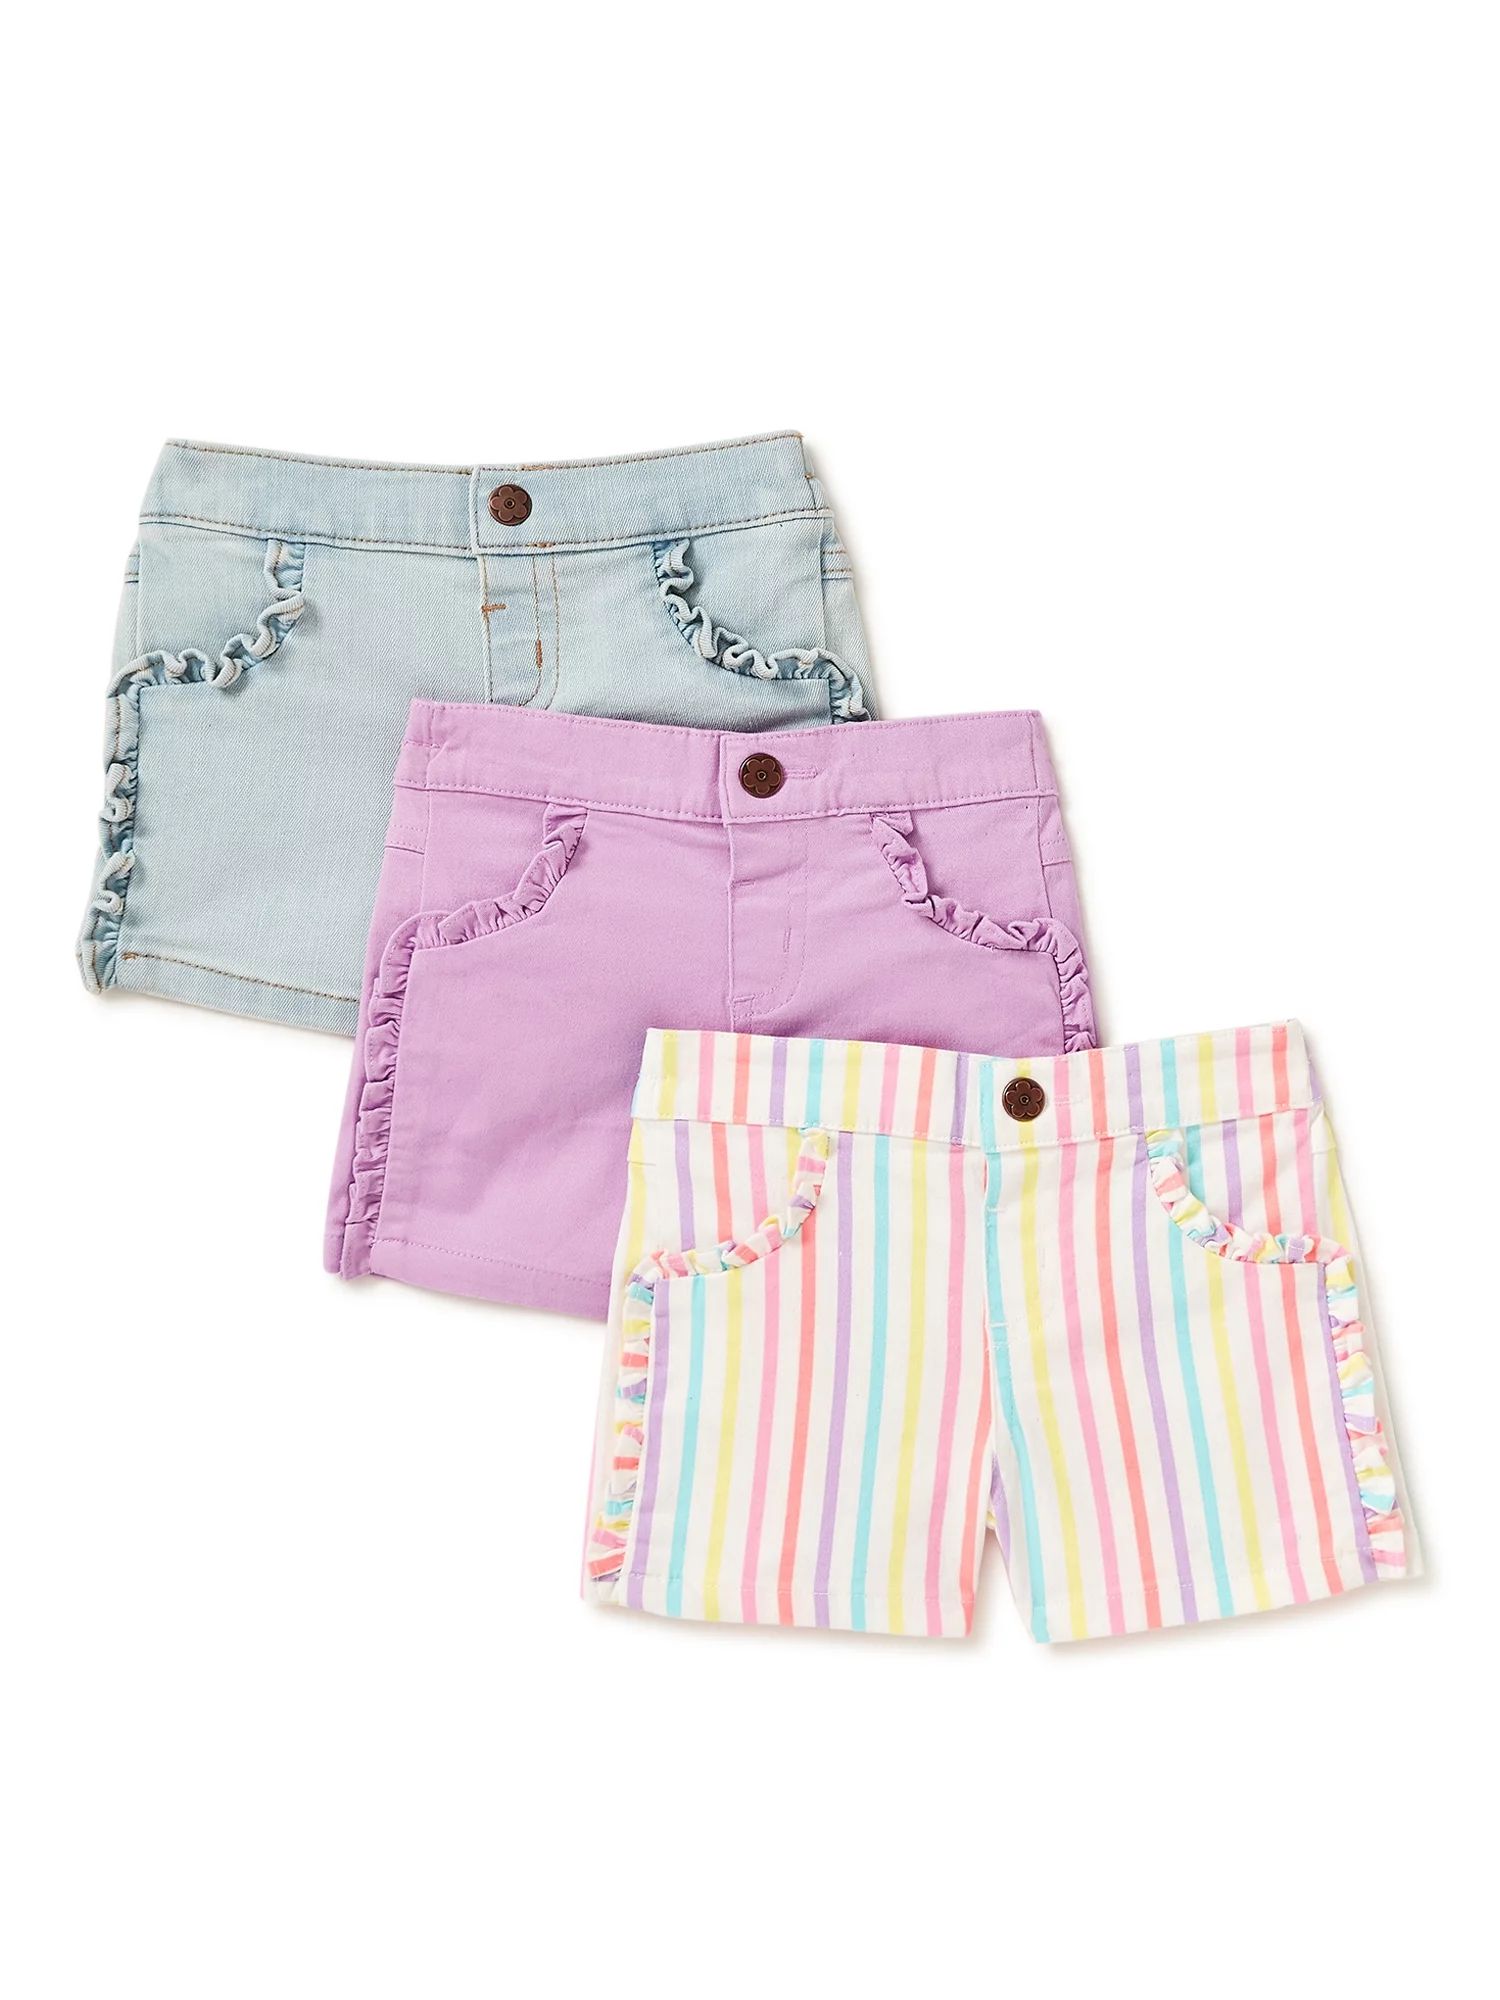 Garanimals Baby Girls' Twill and Denim Ruffle Shorts, 3-Pack | Walmart (US)